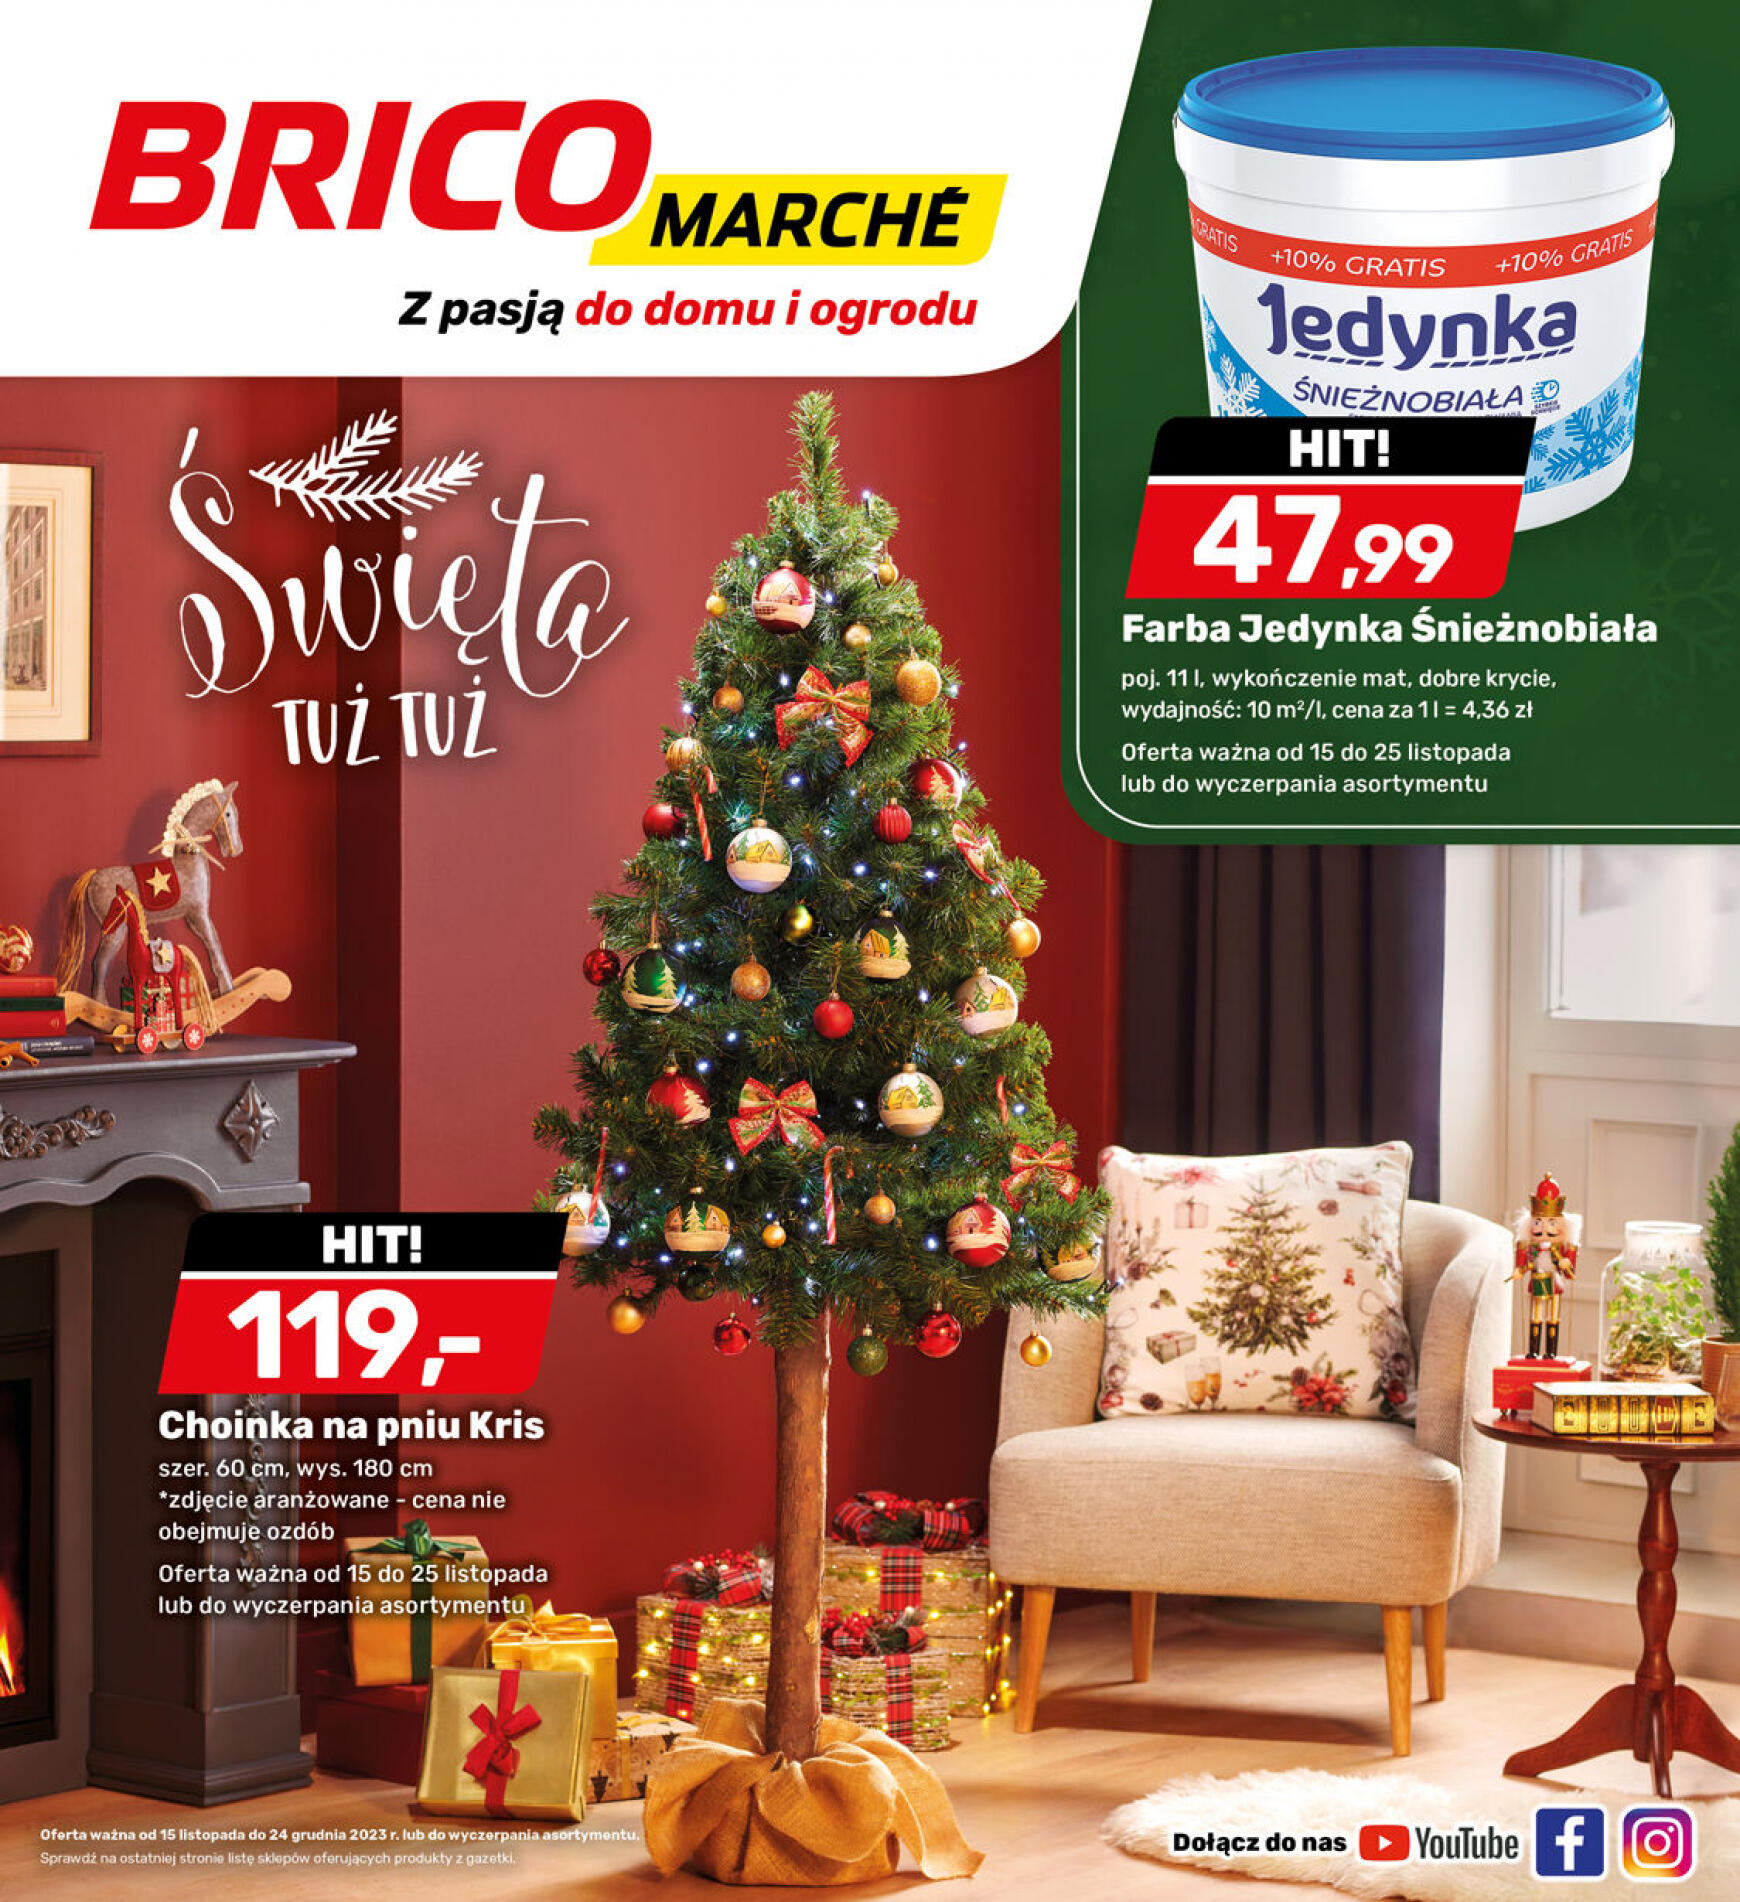 brico-marche - - Bricomarche - page: 9